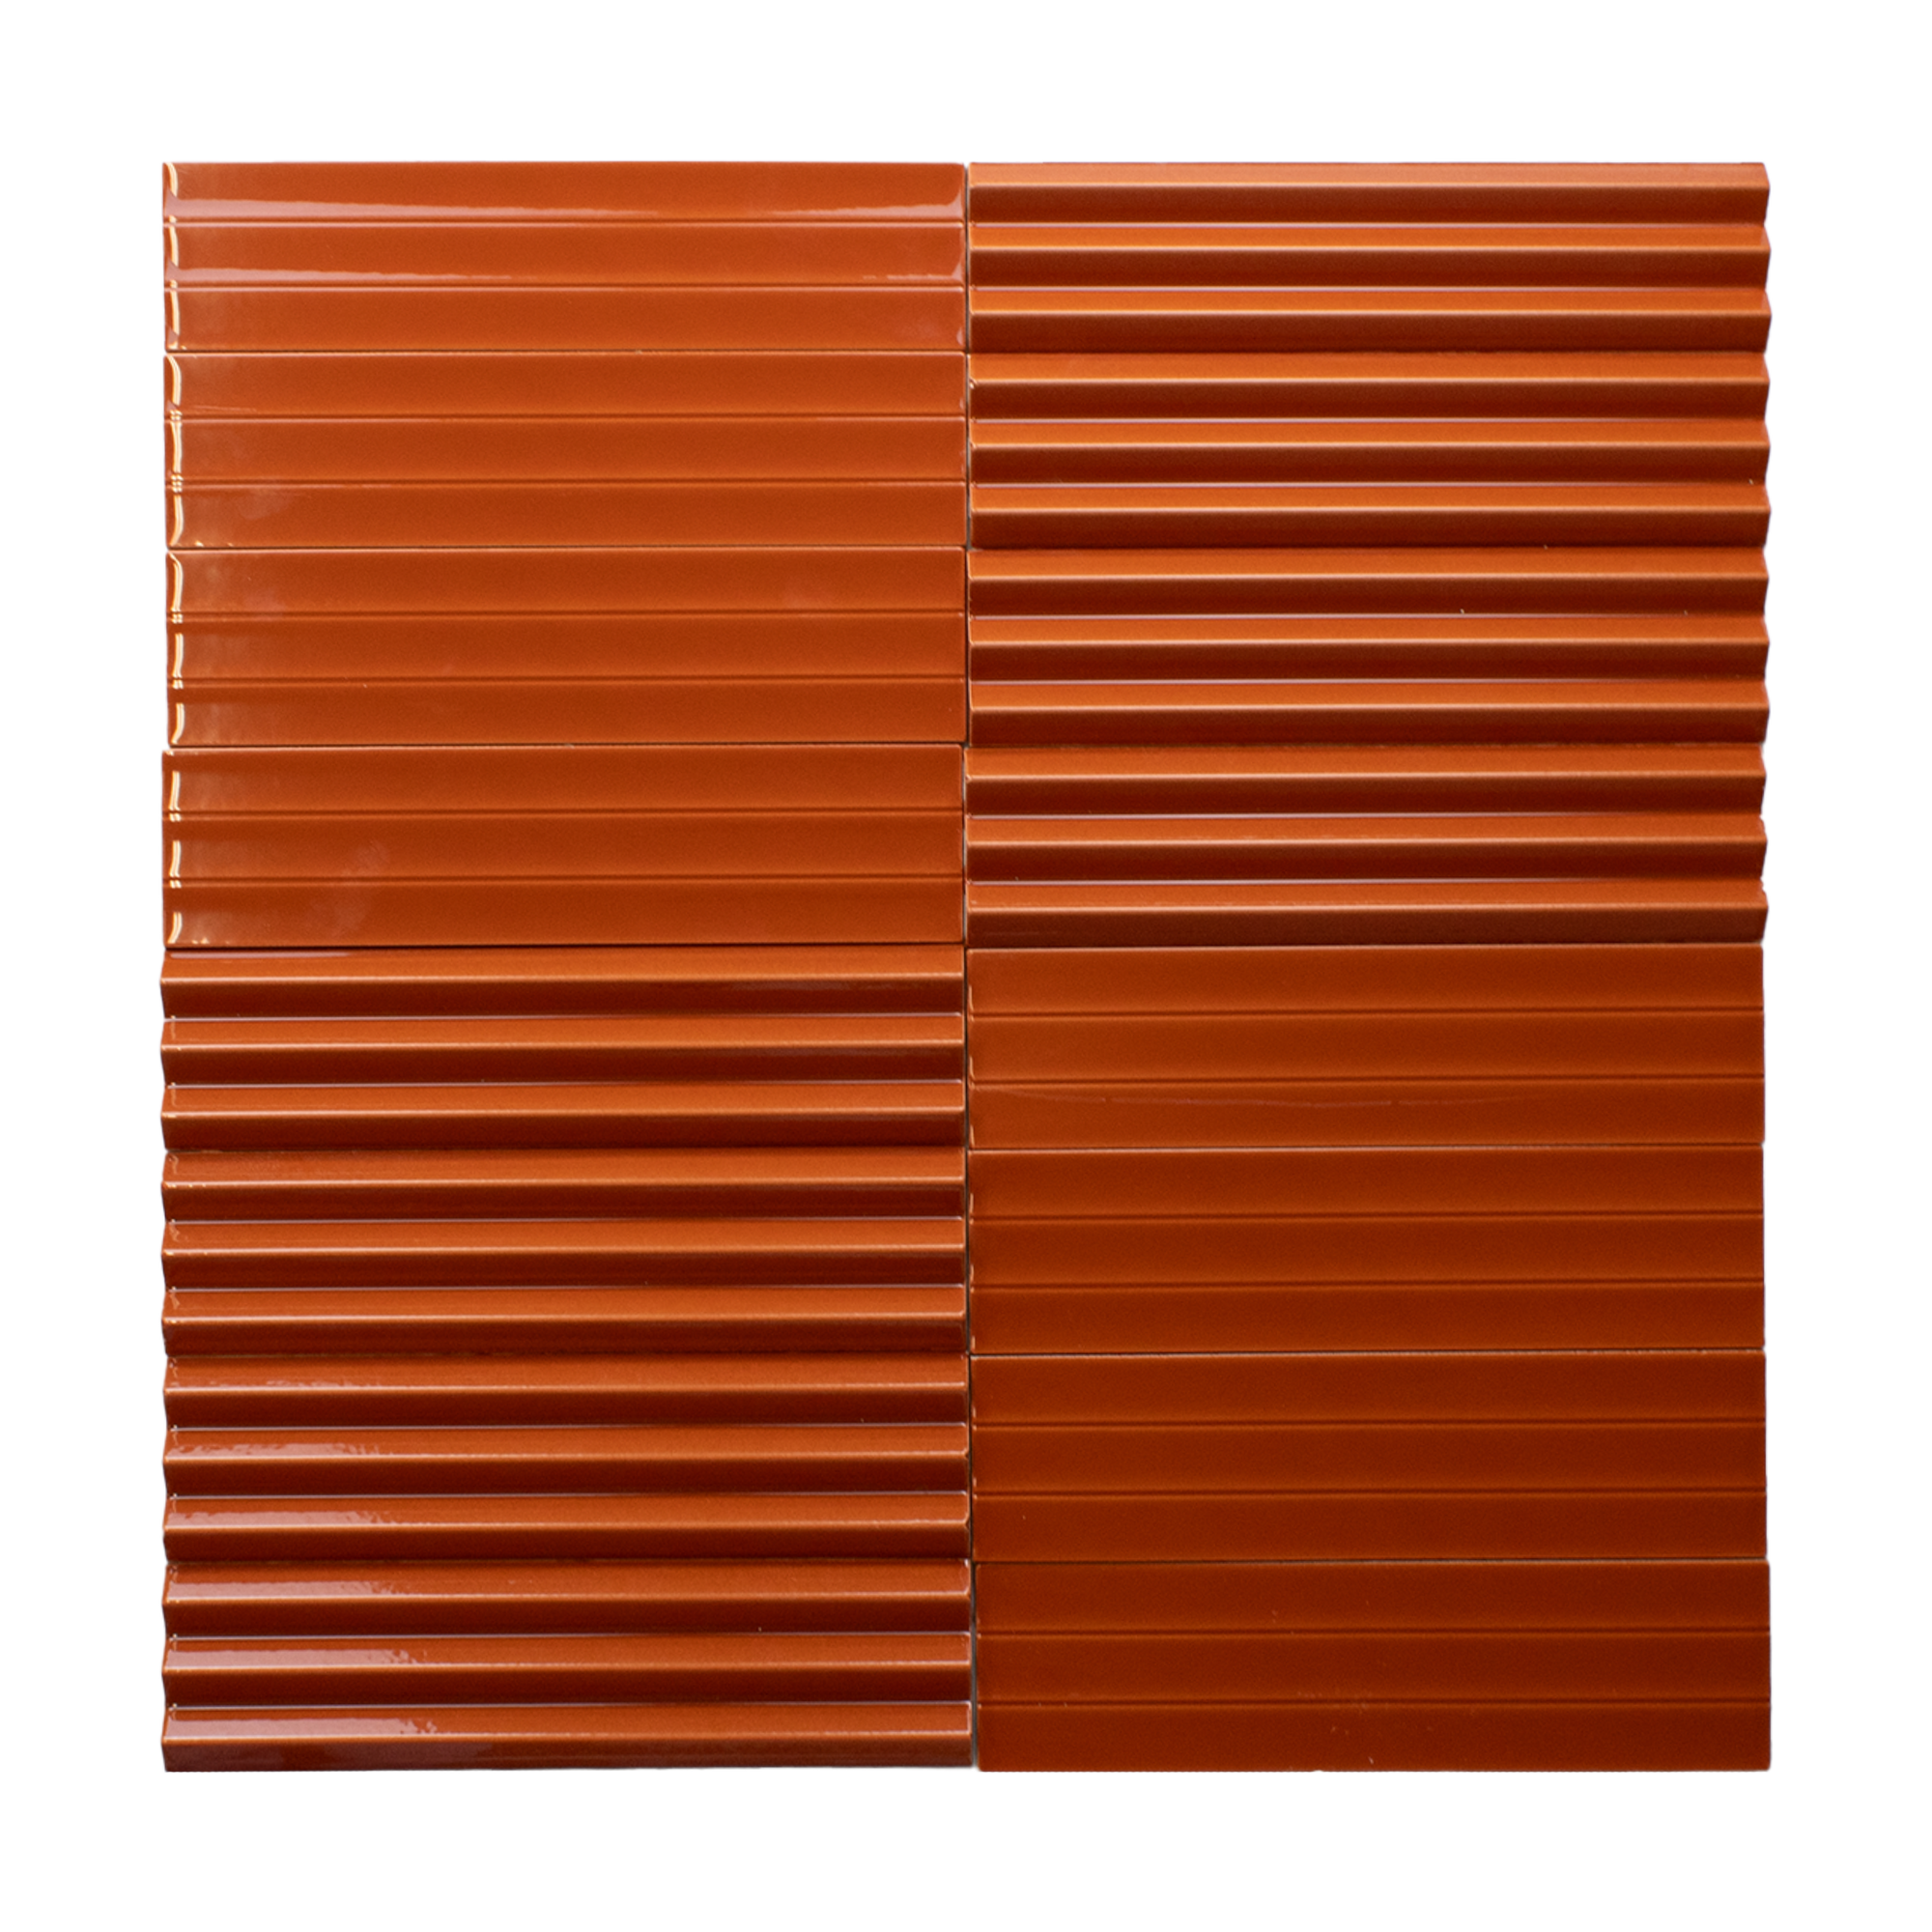 Abaque Apricot Flat 3x12 Subway Tile